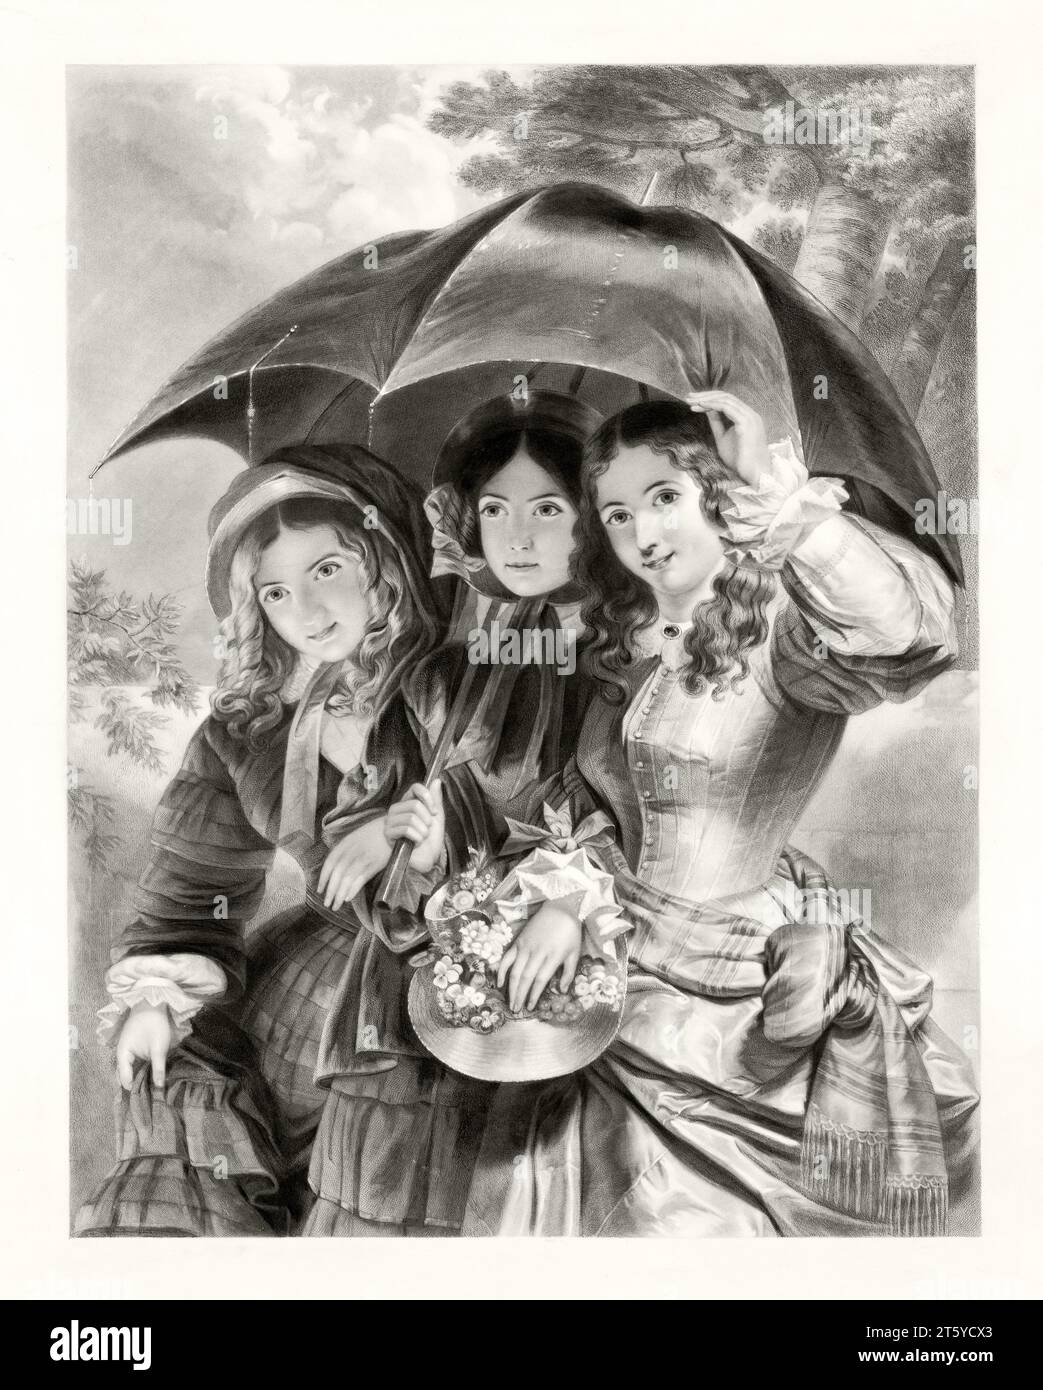 Vecchia illustrazione di tre bellissime ragazze al riparo dalla pioggia sotto l'ombrello. Da autore non identificato, publ. nel 1890 Foto Stock